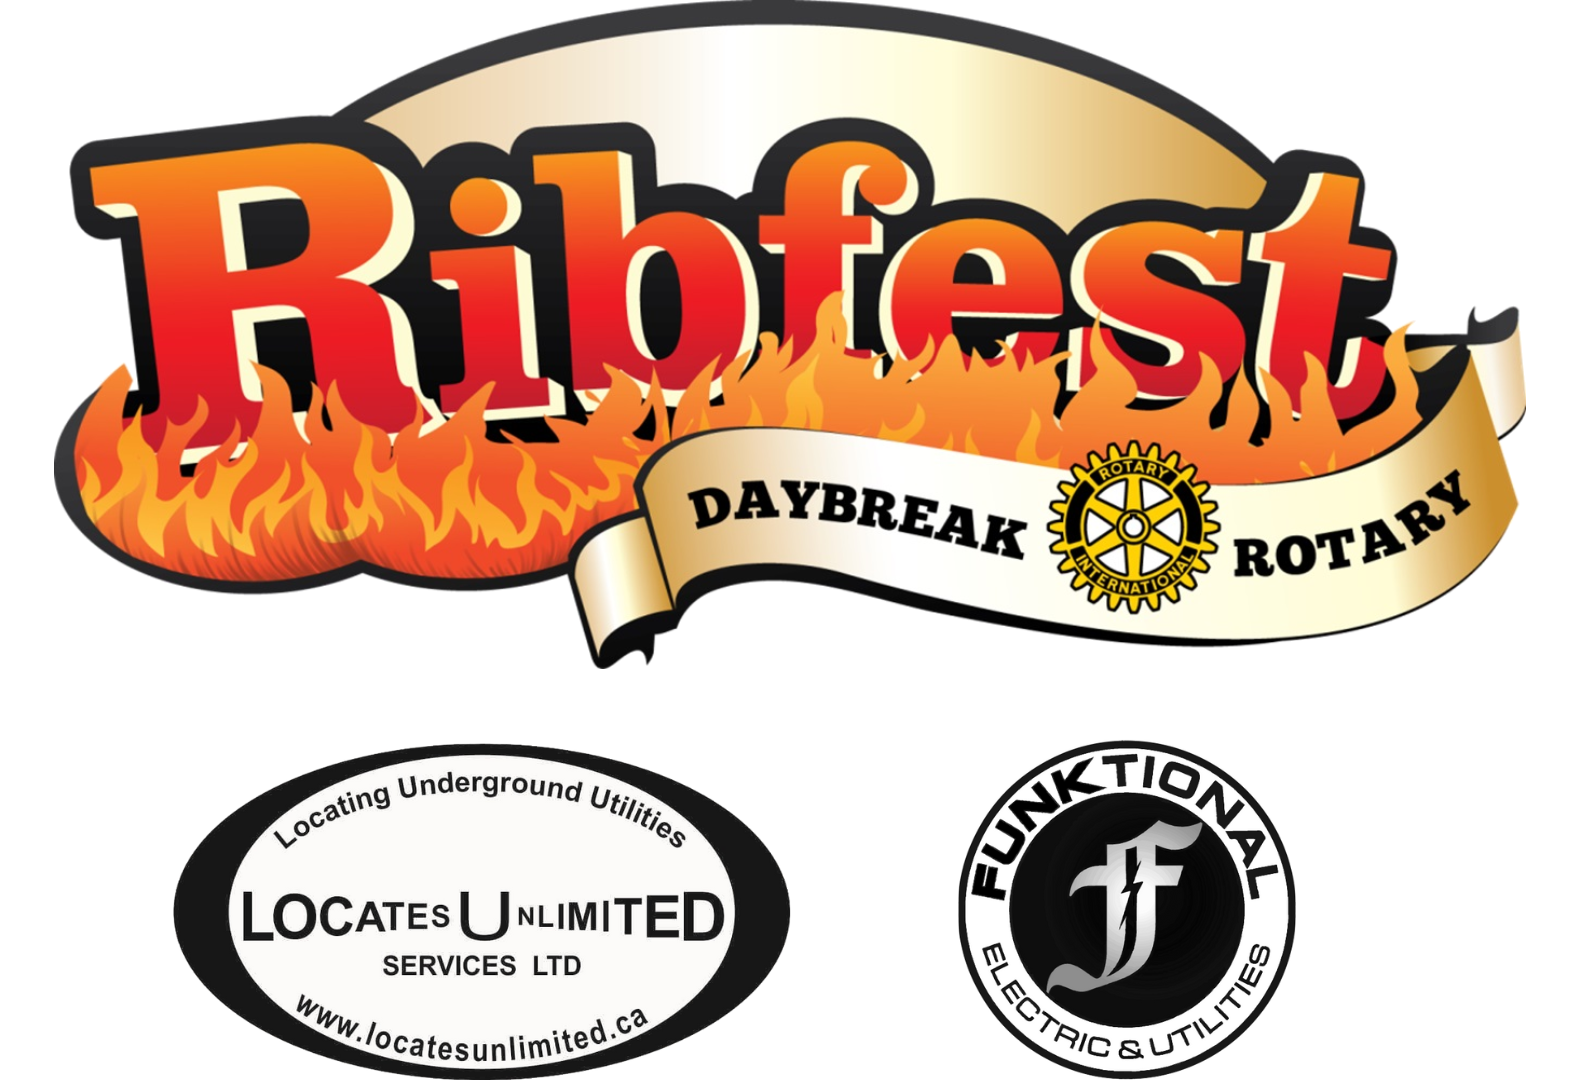 Register to volunteer with Kamloops Daybreak Rotary Ribfest via